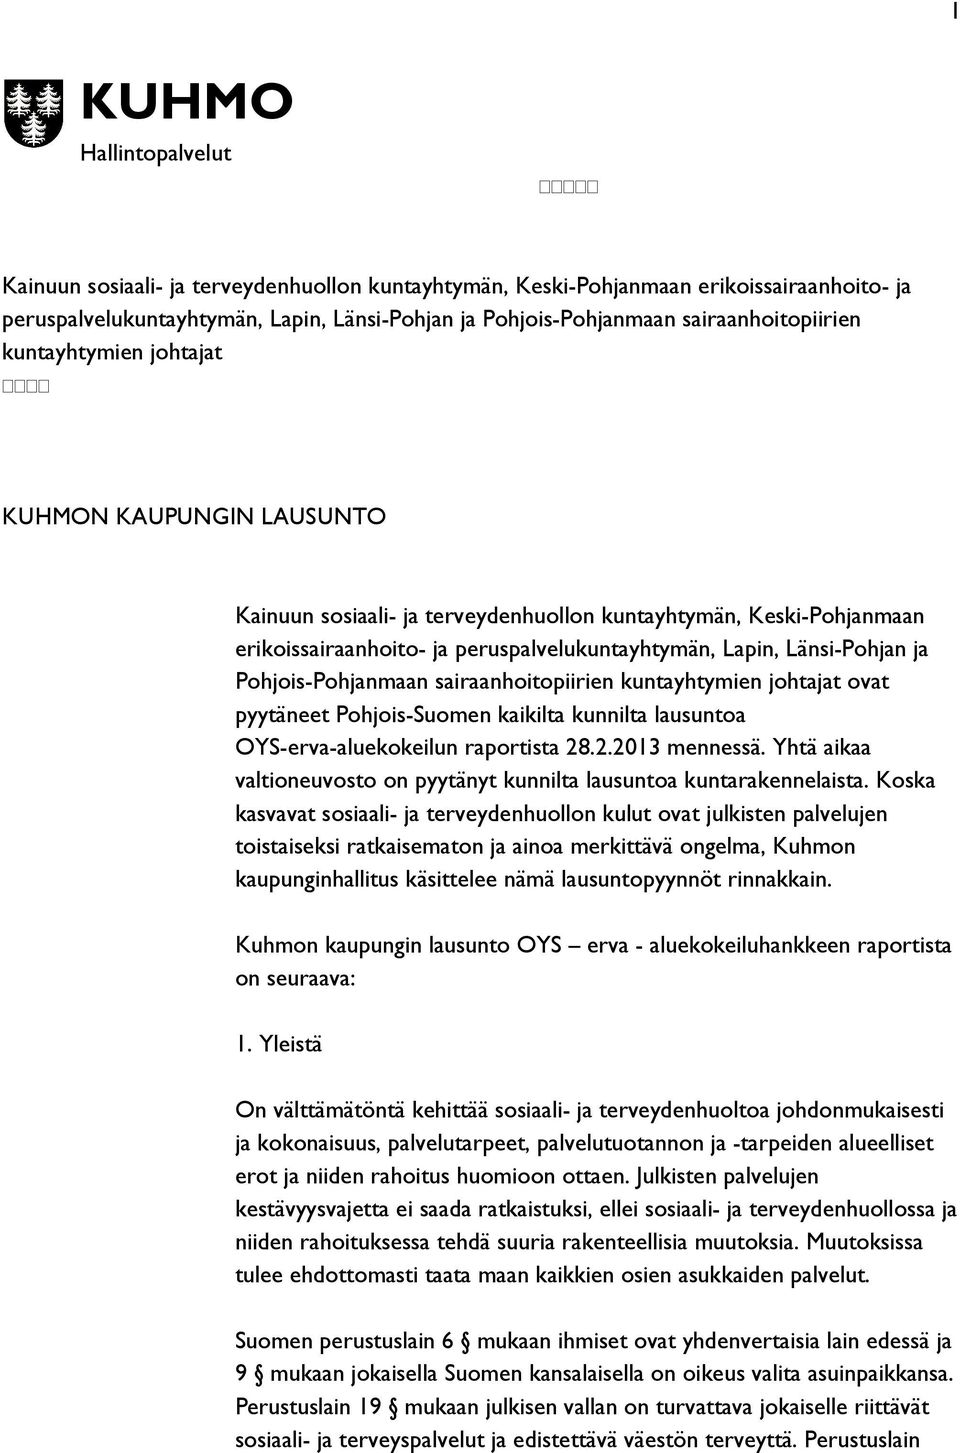 Länsi-Pohjan ja Pohjois-Pohjanmaan sairaanhoitopiirien kuntayhtymien johtajat ovat pyytäneet Pohjois-Suomen kaikilta kunnilta lausuntoa OYS-erva-aluekokeilun raportista 28.2.2013 mennessä.